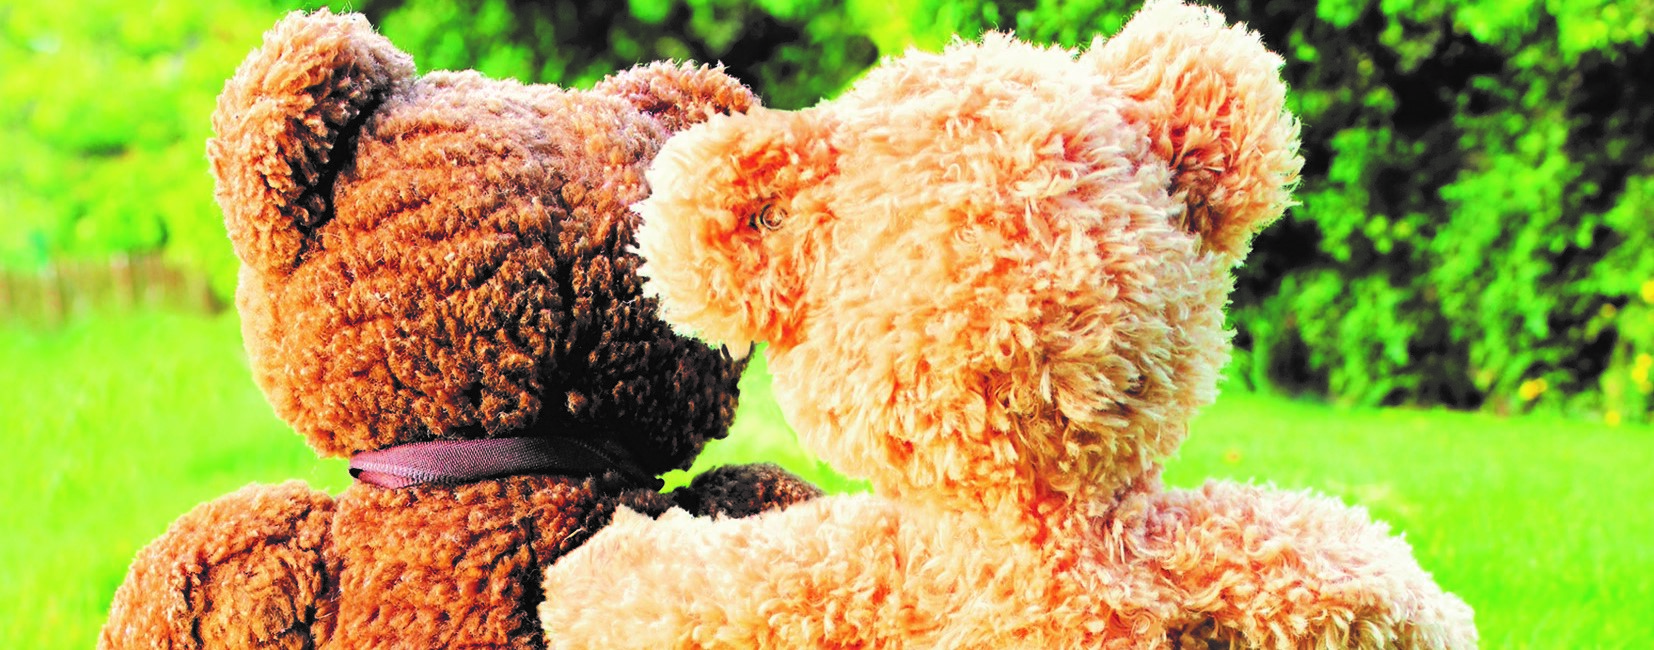 Teddy bears huggin